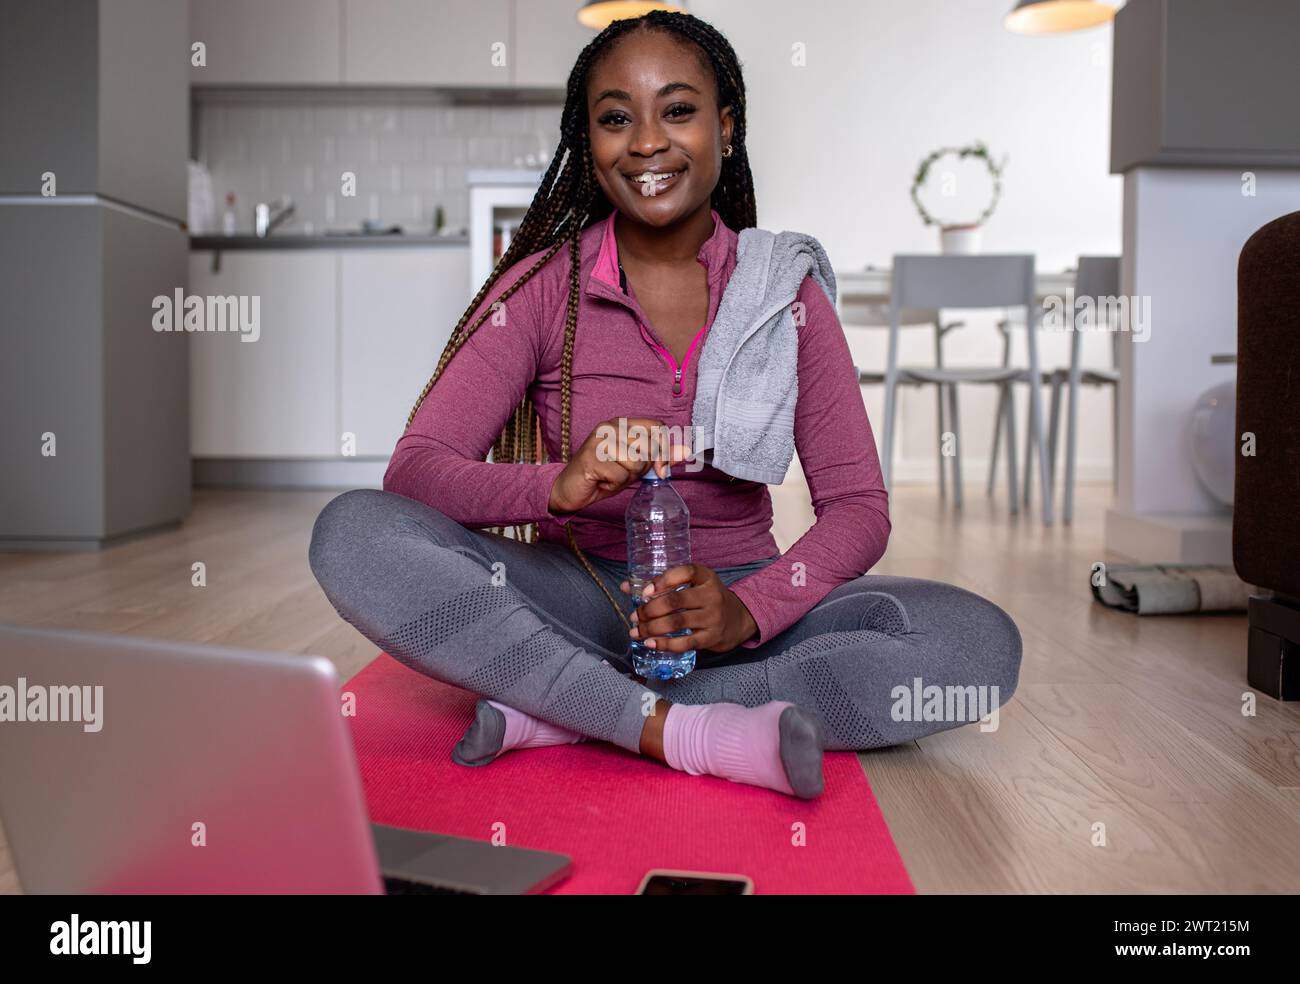 Porträt einer jungen afroamerikanerin zu Hause, die nach dem Training auf dem Boden ruht. Stockfoto